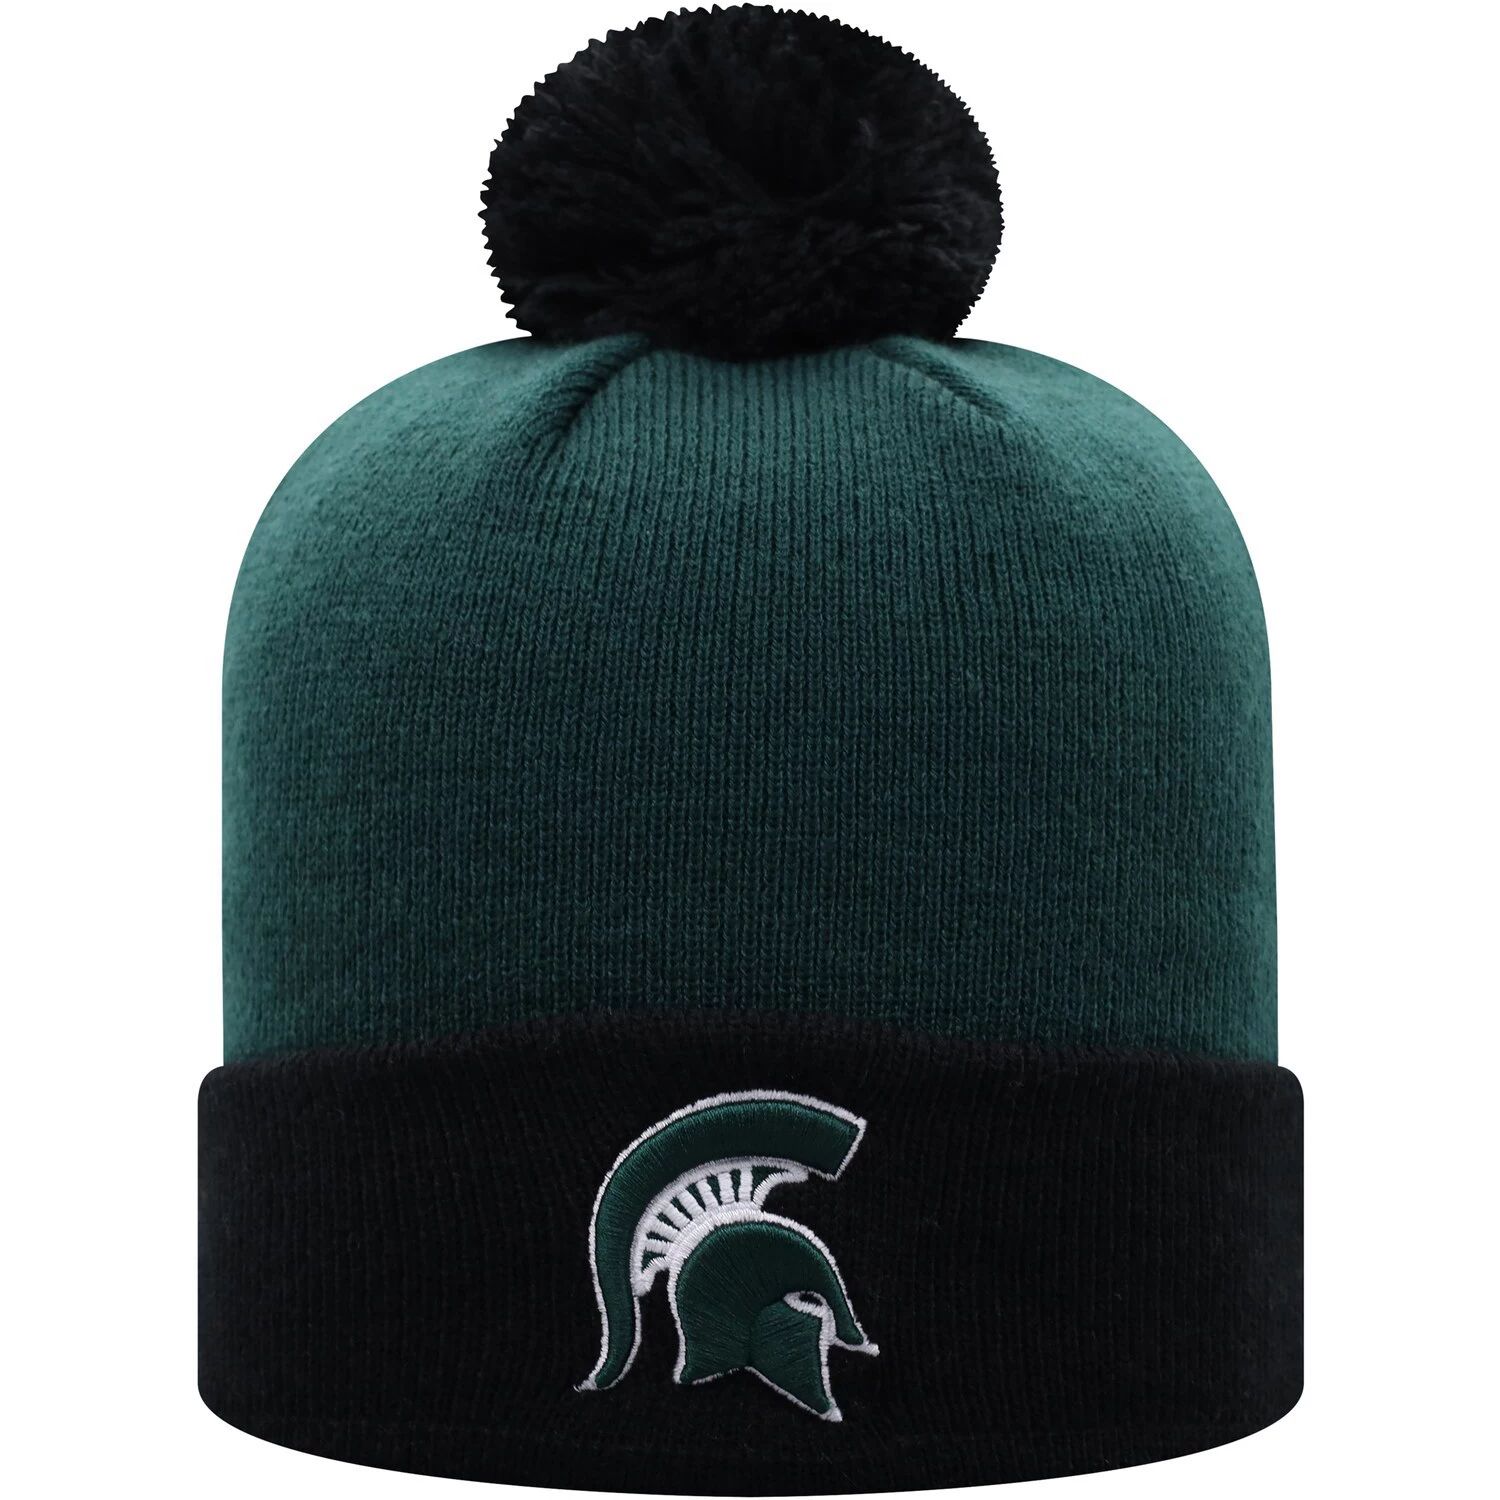 Мужская двухцветная вязаная шапка с манжетами и помпоном Top of the World, зеленая/черная, штат Мичиган, Spartans Core